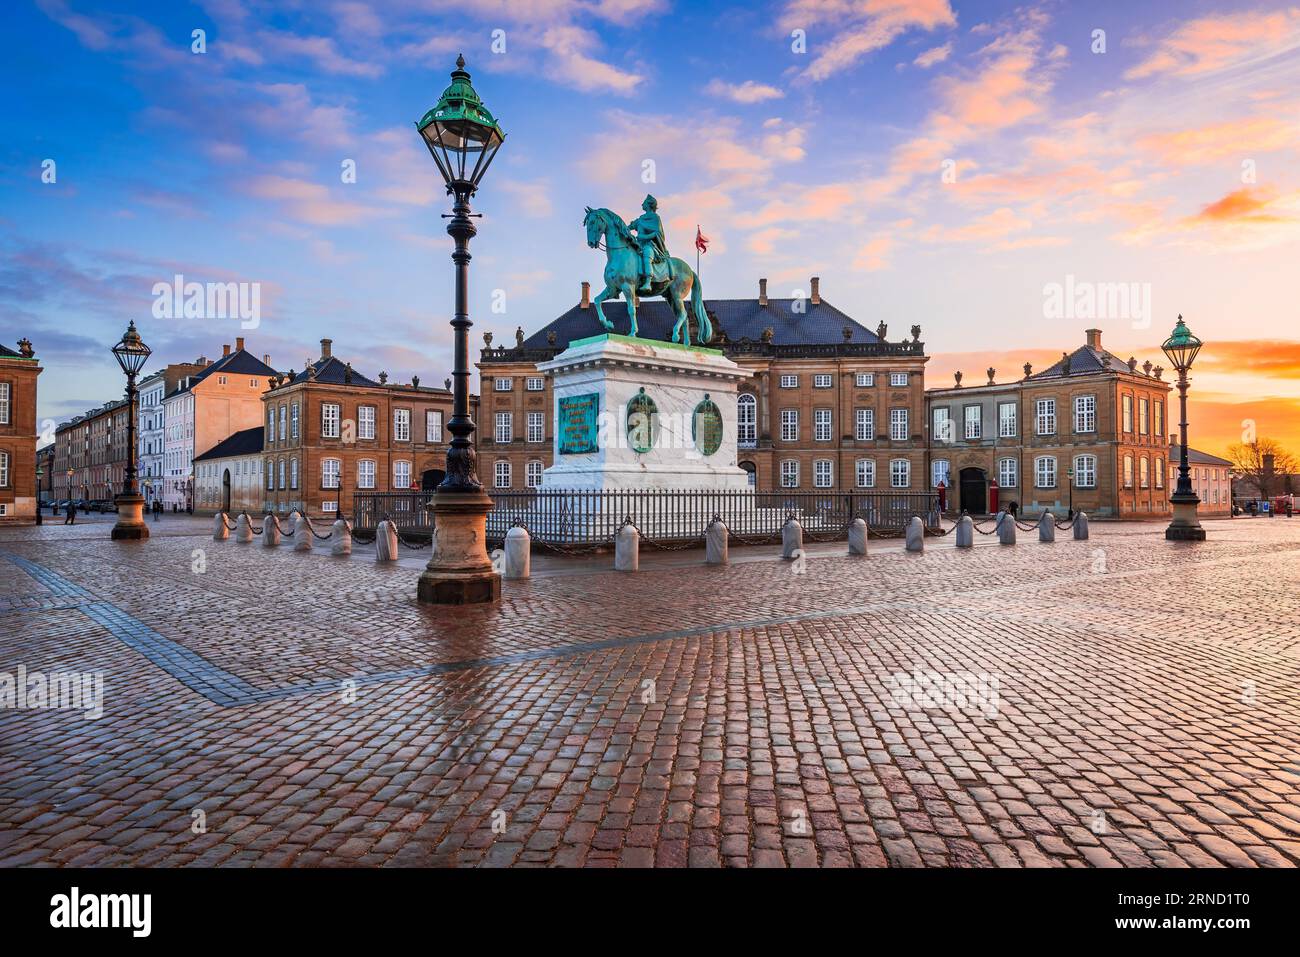 Kopenhagen, Dänemark. Morgens Sonnenaufgang Licht mit farbigen Wolken, Amalienborg Platz, schöne nördliche Stadt Europas. Stockfoto